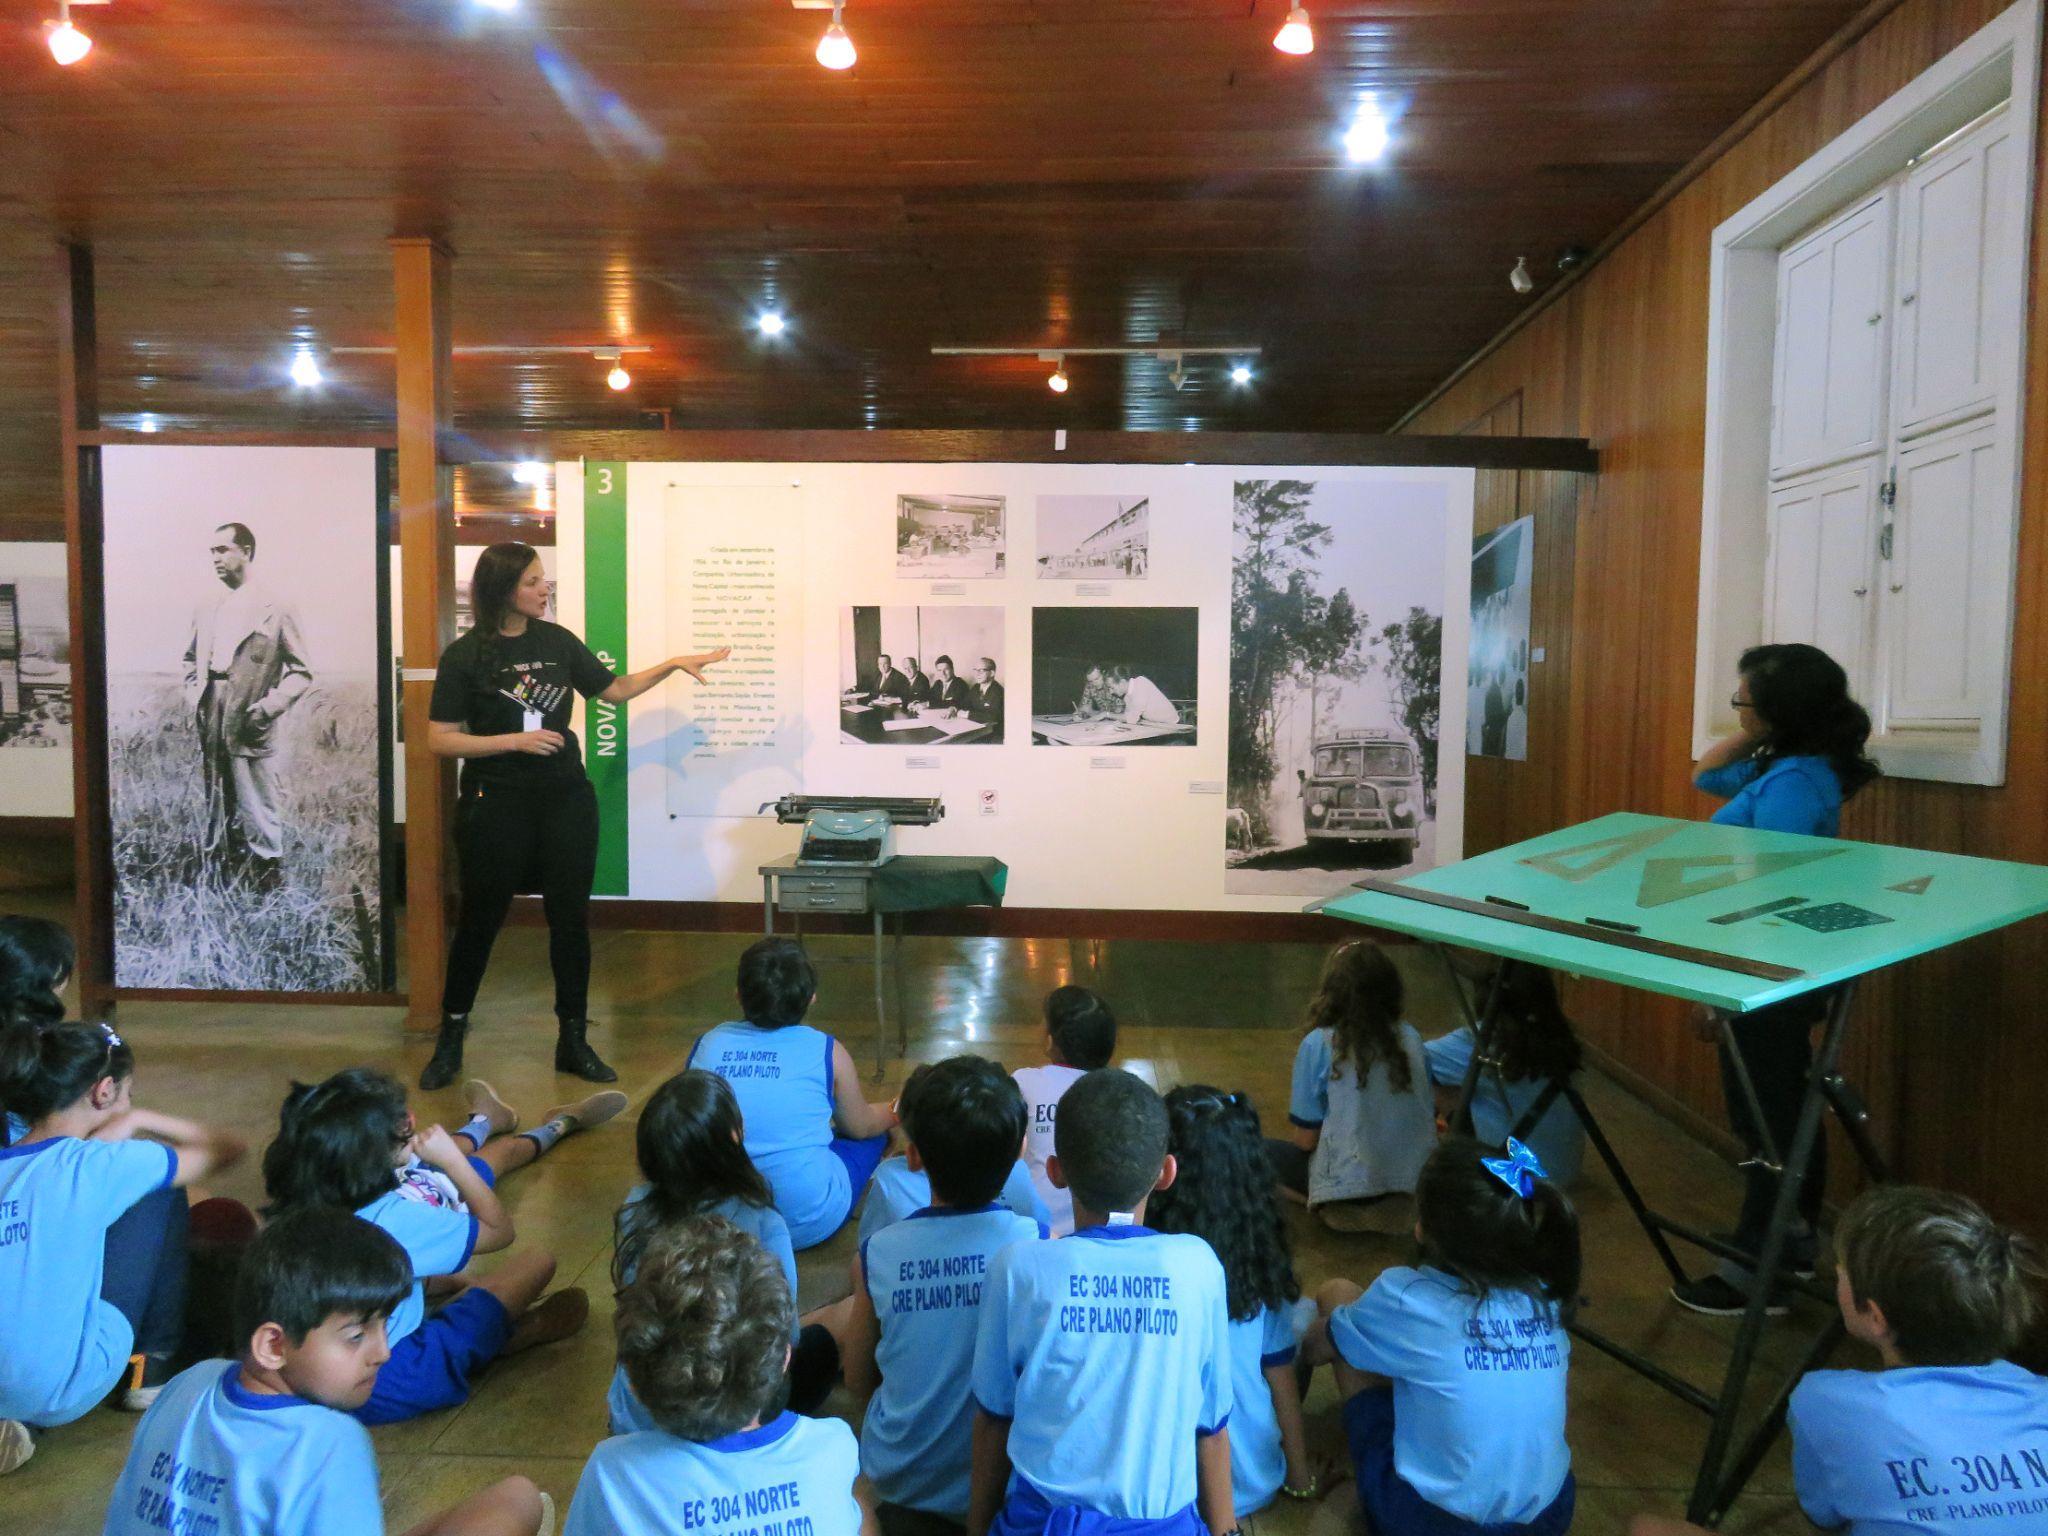 Programa Educativo abre agendamento para visitas orientadas no Museu Vivo da Memória Candanga